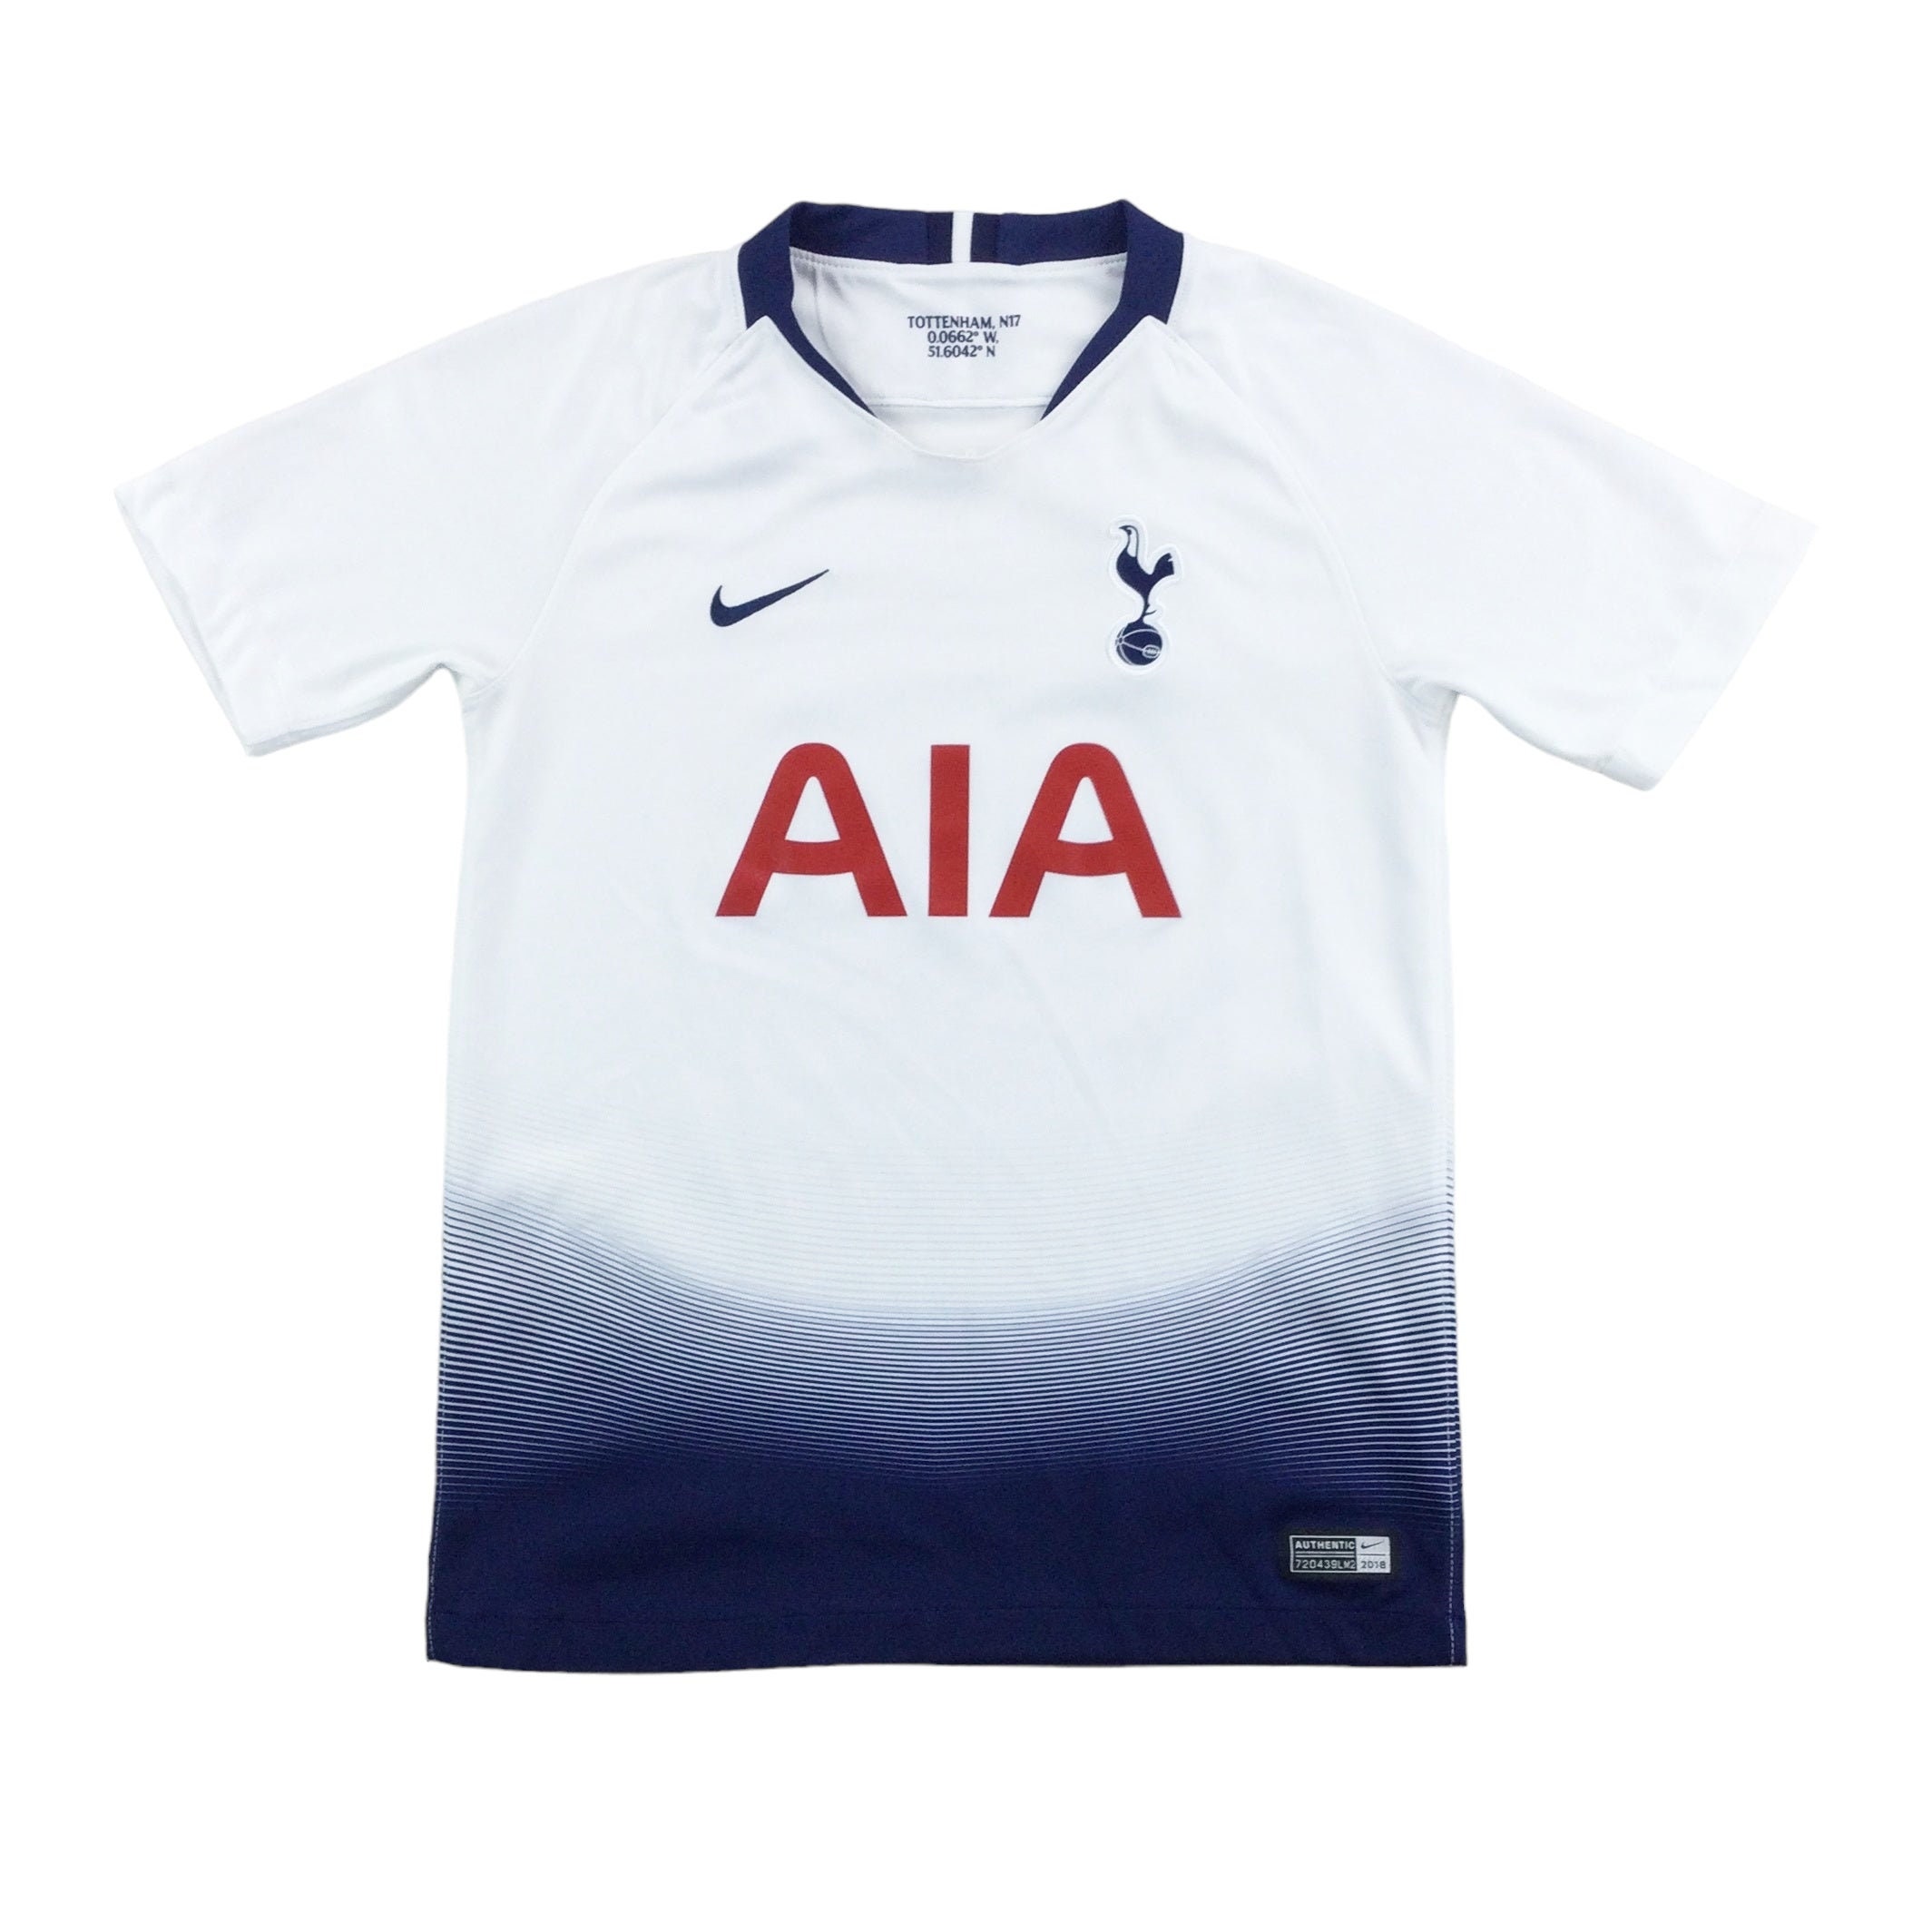 Tottenham x Nike concept kits I made : r/Tottenham